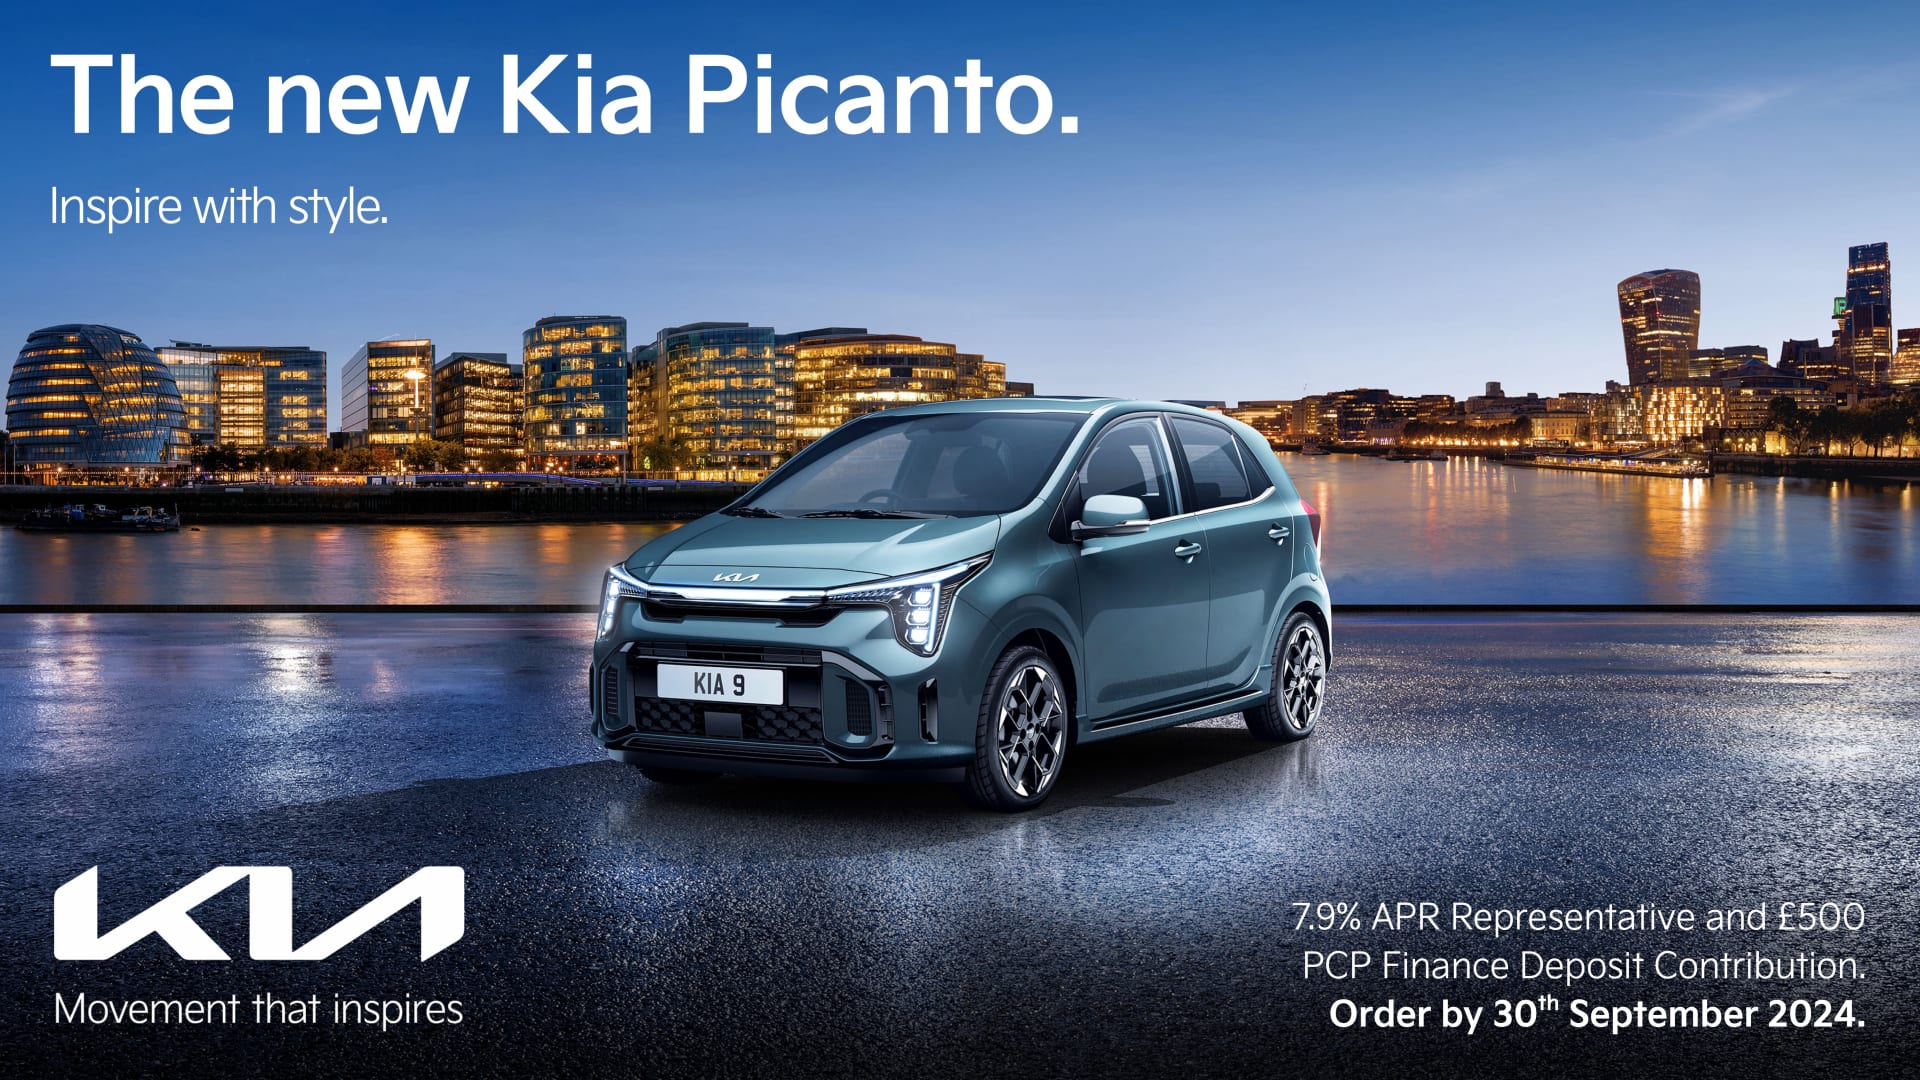 The New Kia Picanto